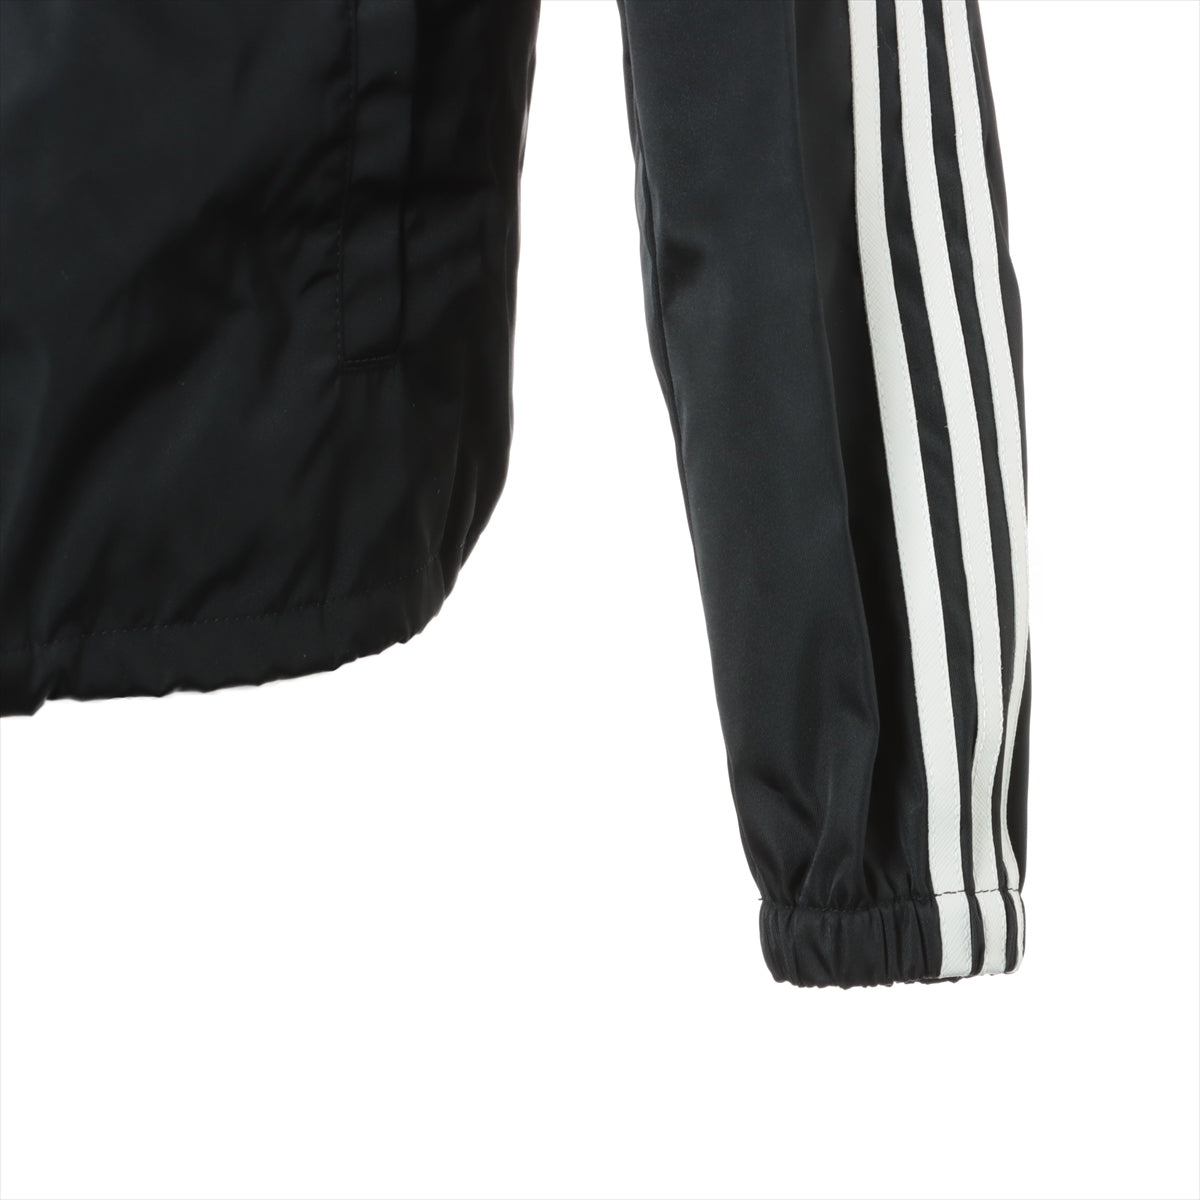 Prada x Adidas Triangle logo 21AW Nylon Blouson 44 Men's Black  RE-NYLON track jacket SGB964